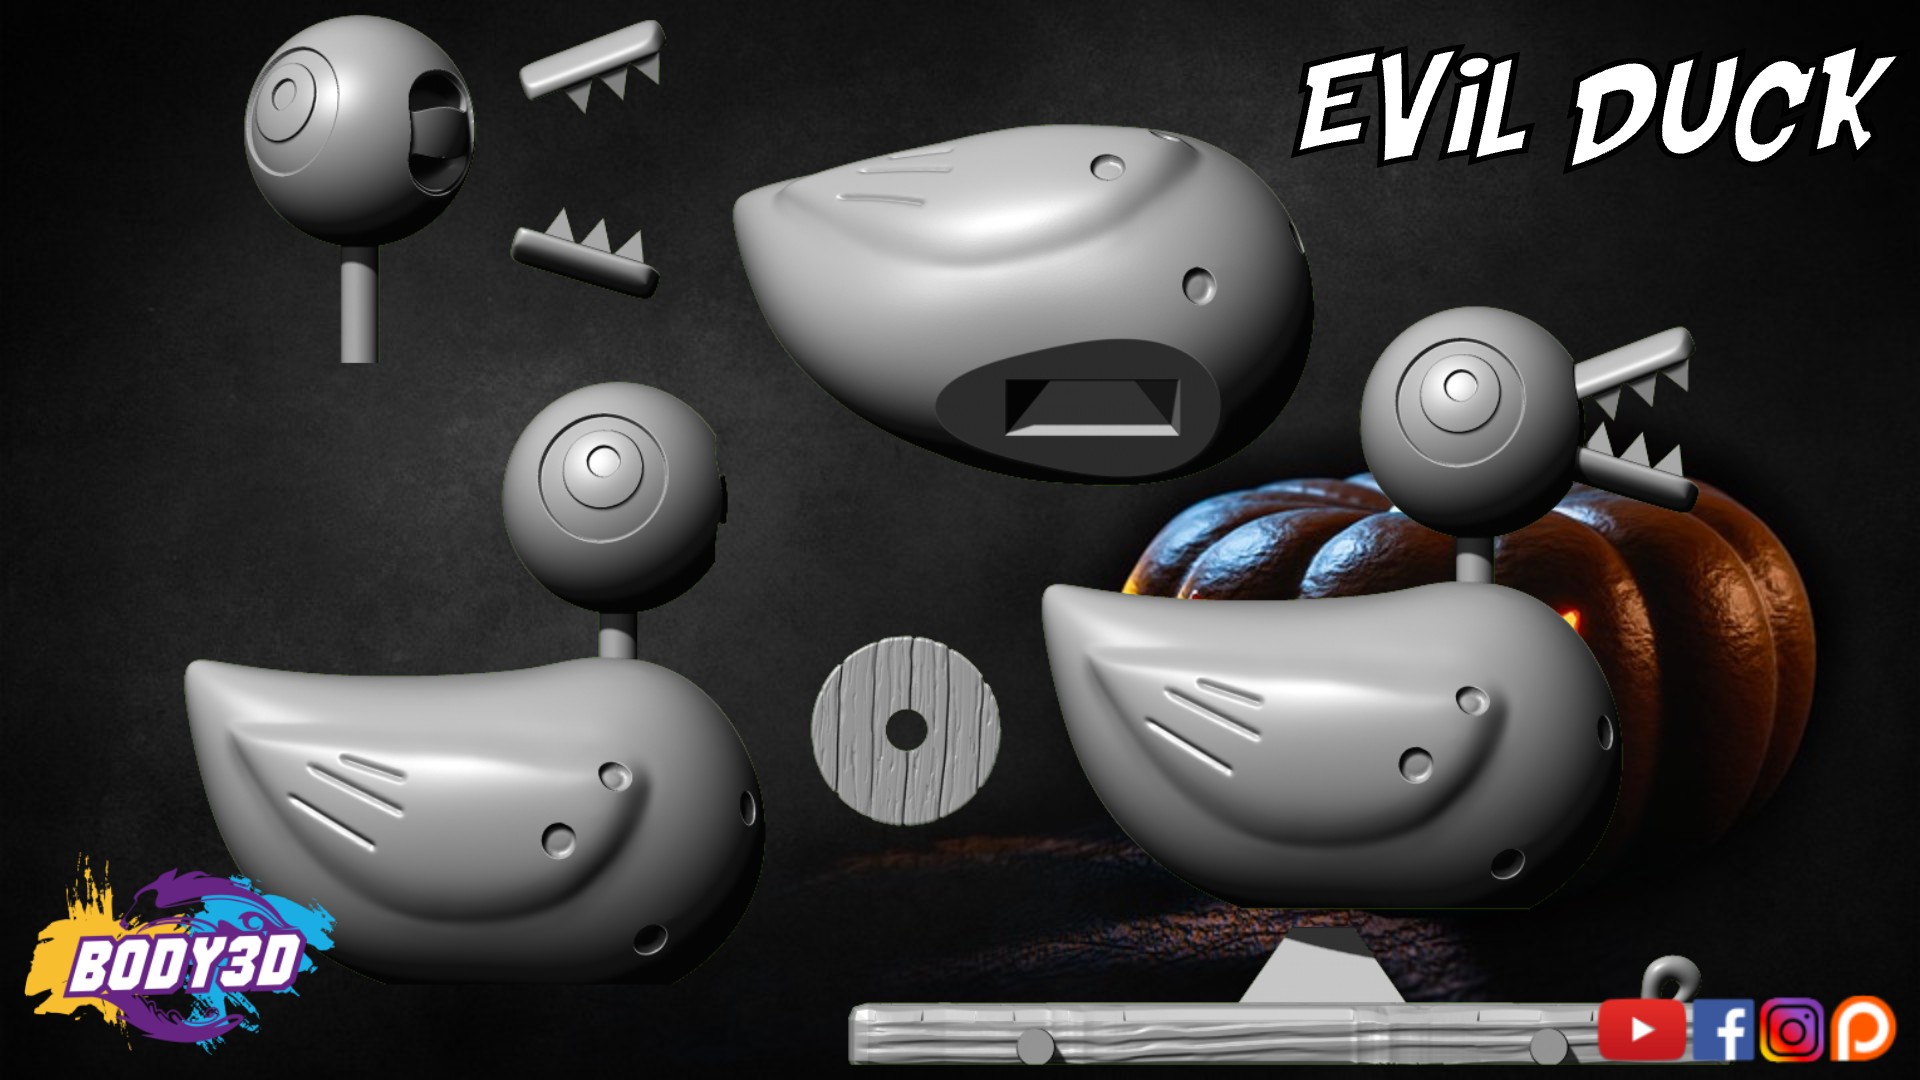 hfgdhdhdj.png Datei Evil Duck - Nightmare Before Christmas herunterladen • Modell für den 3D-Druck, BODY3D